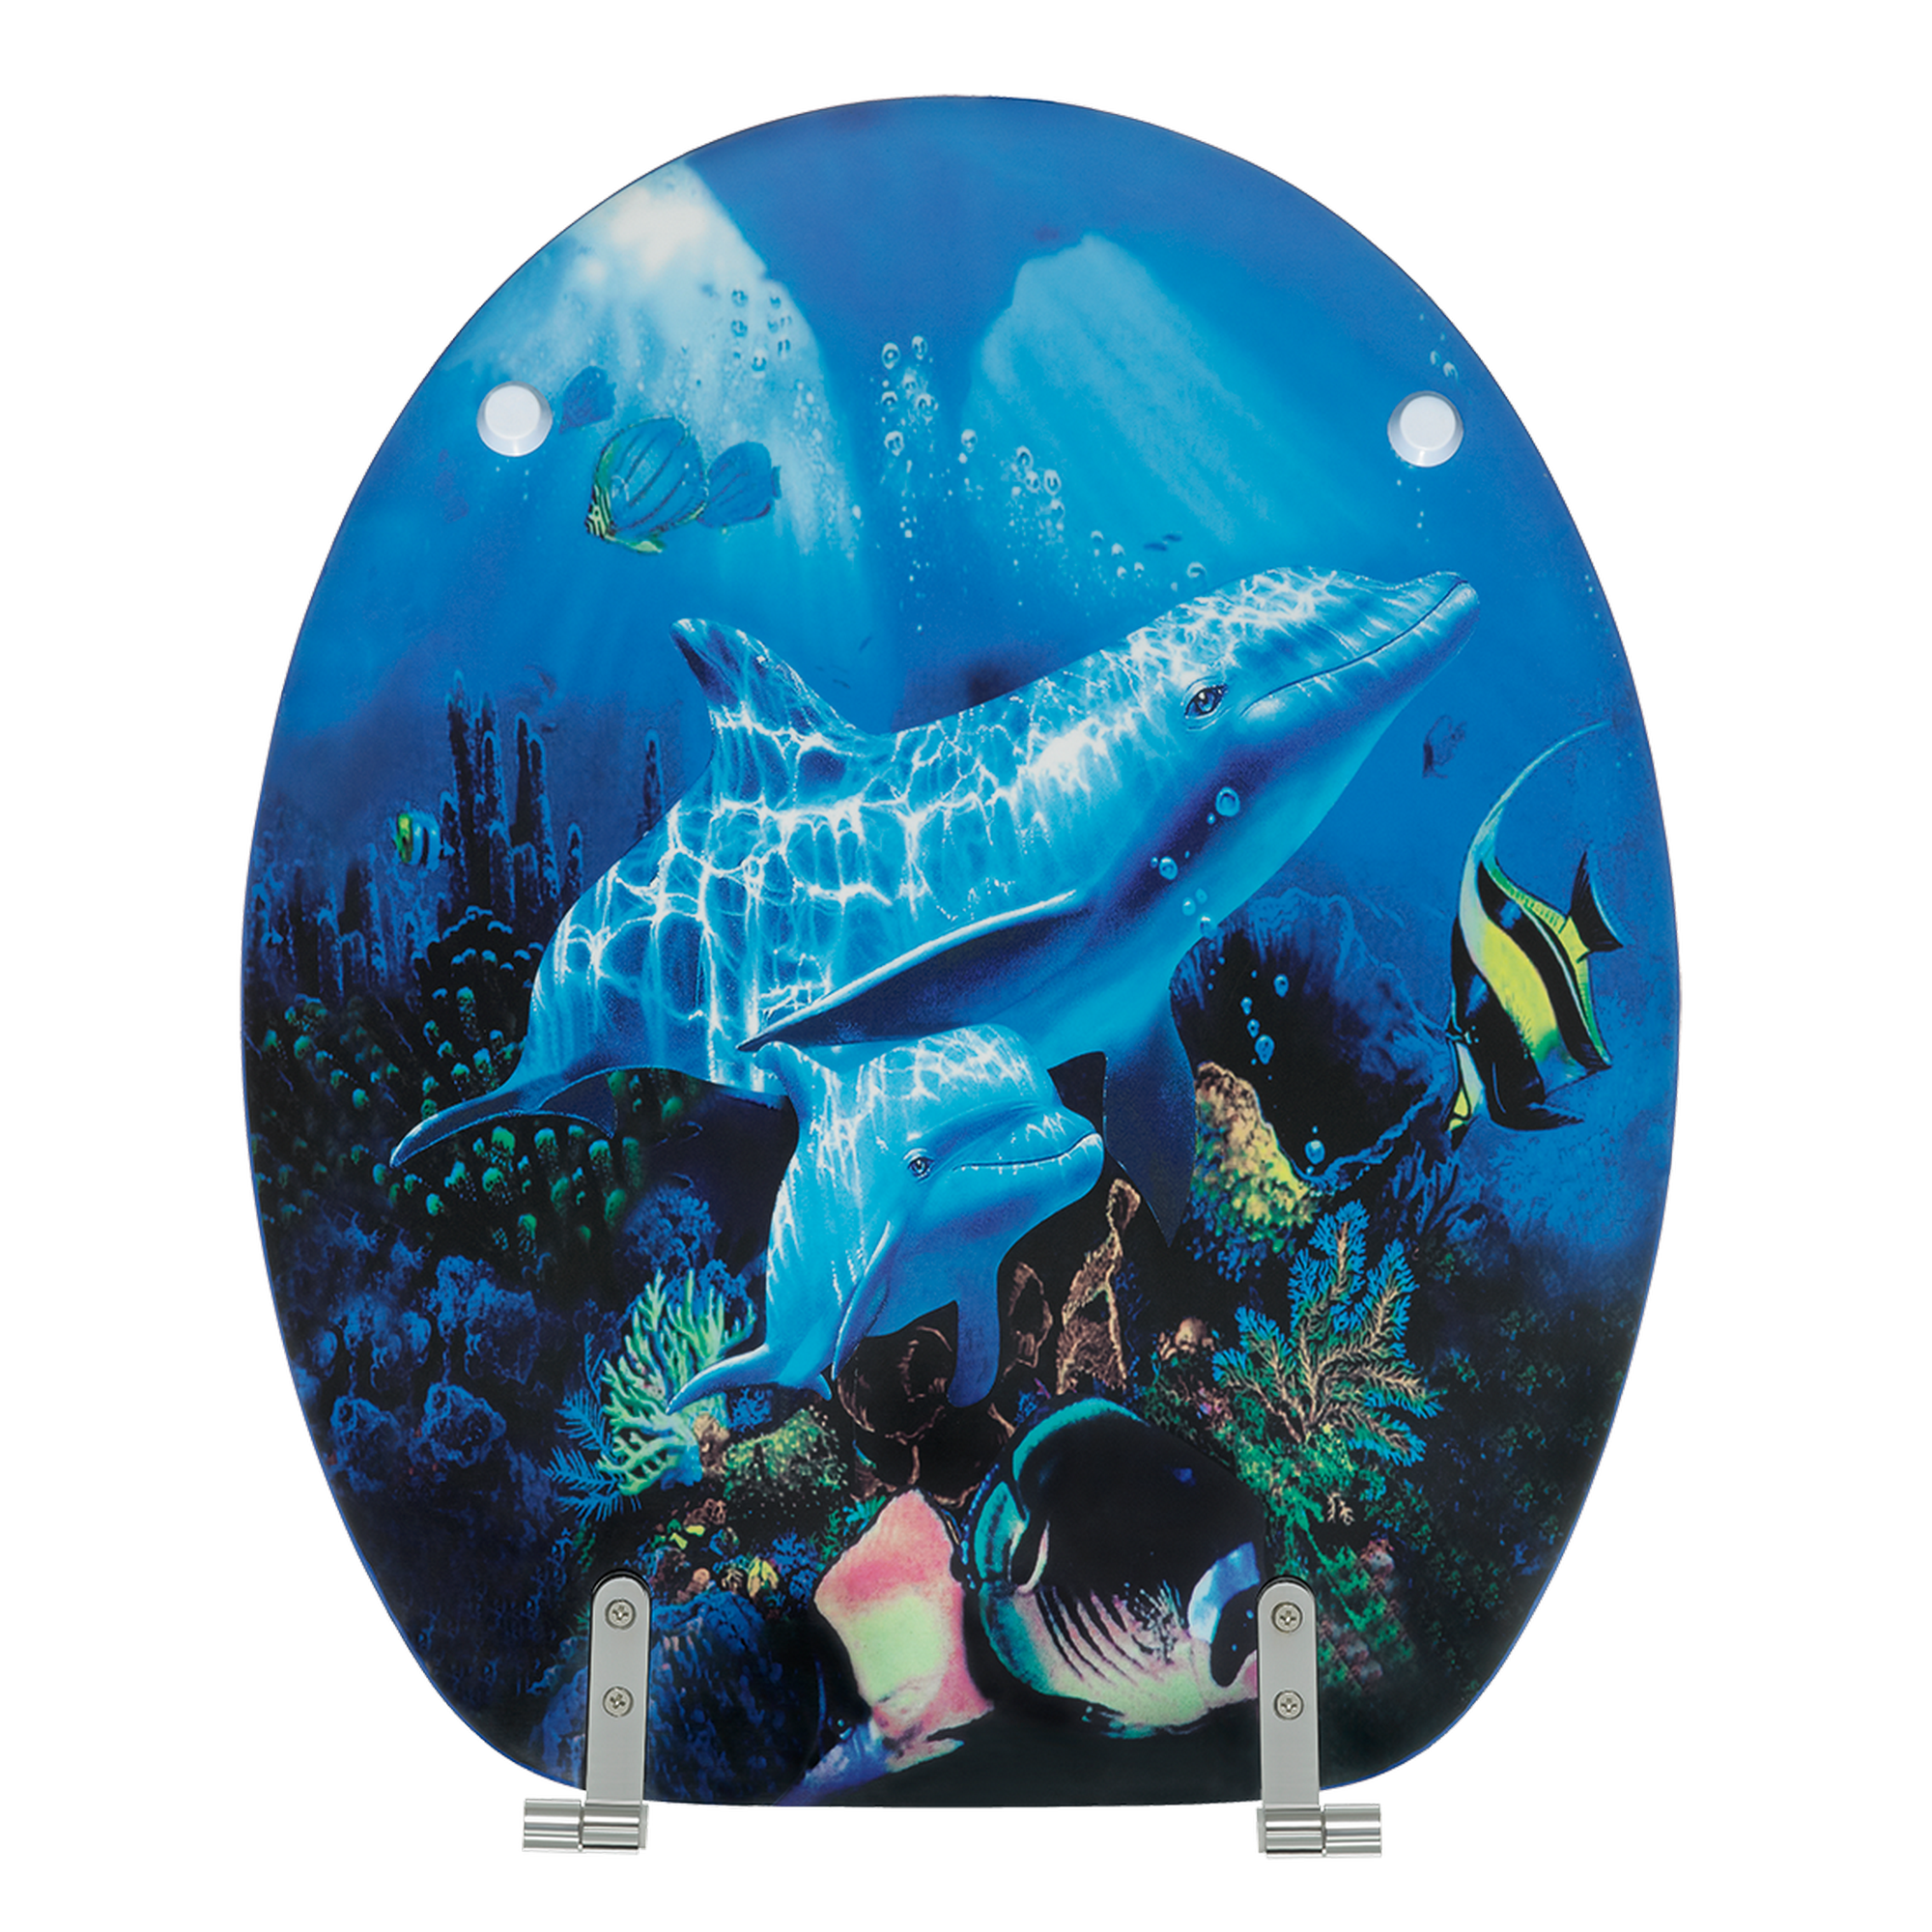 WC-Sitz 'Delfin', blau + product picture